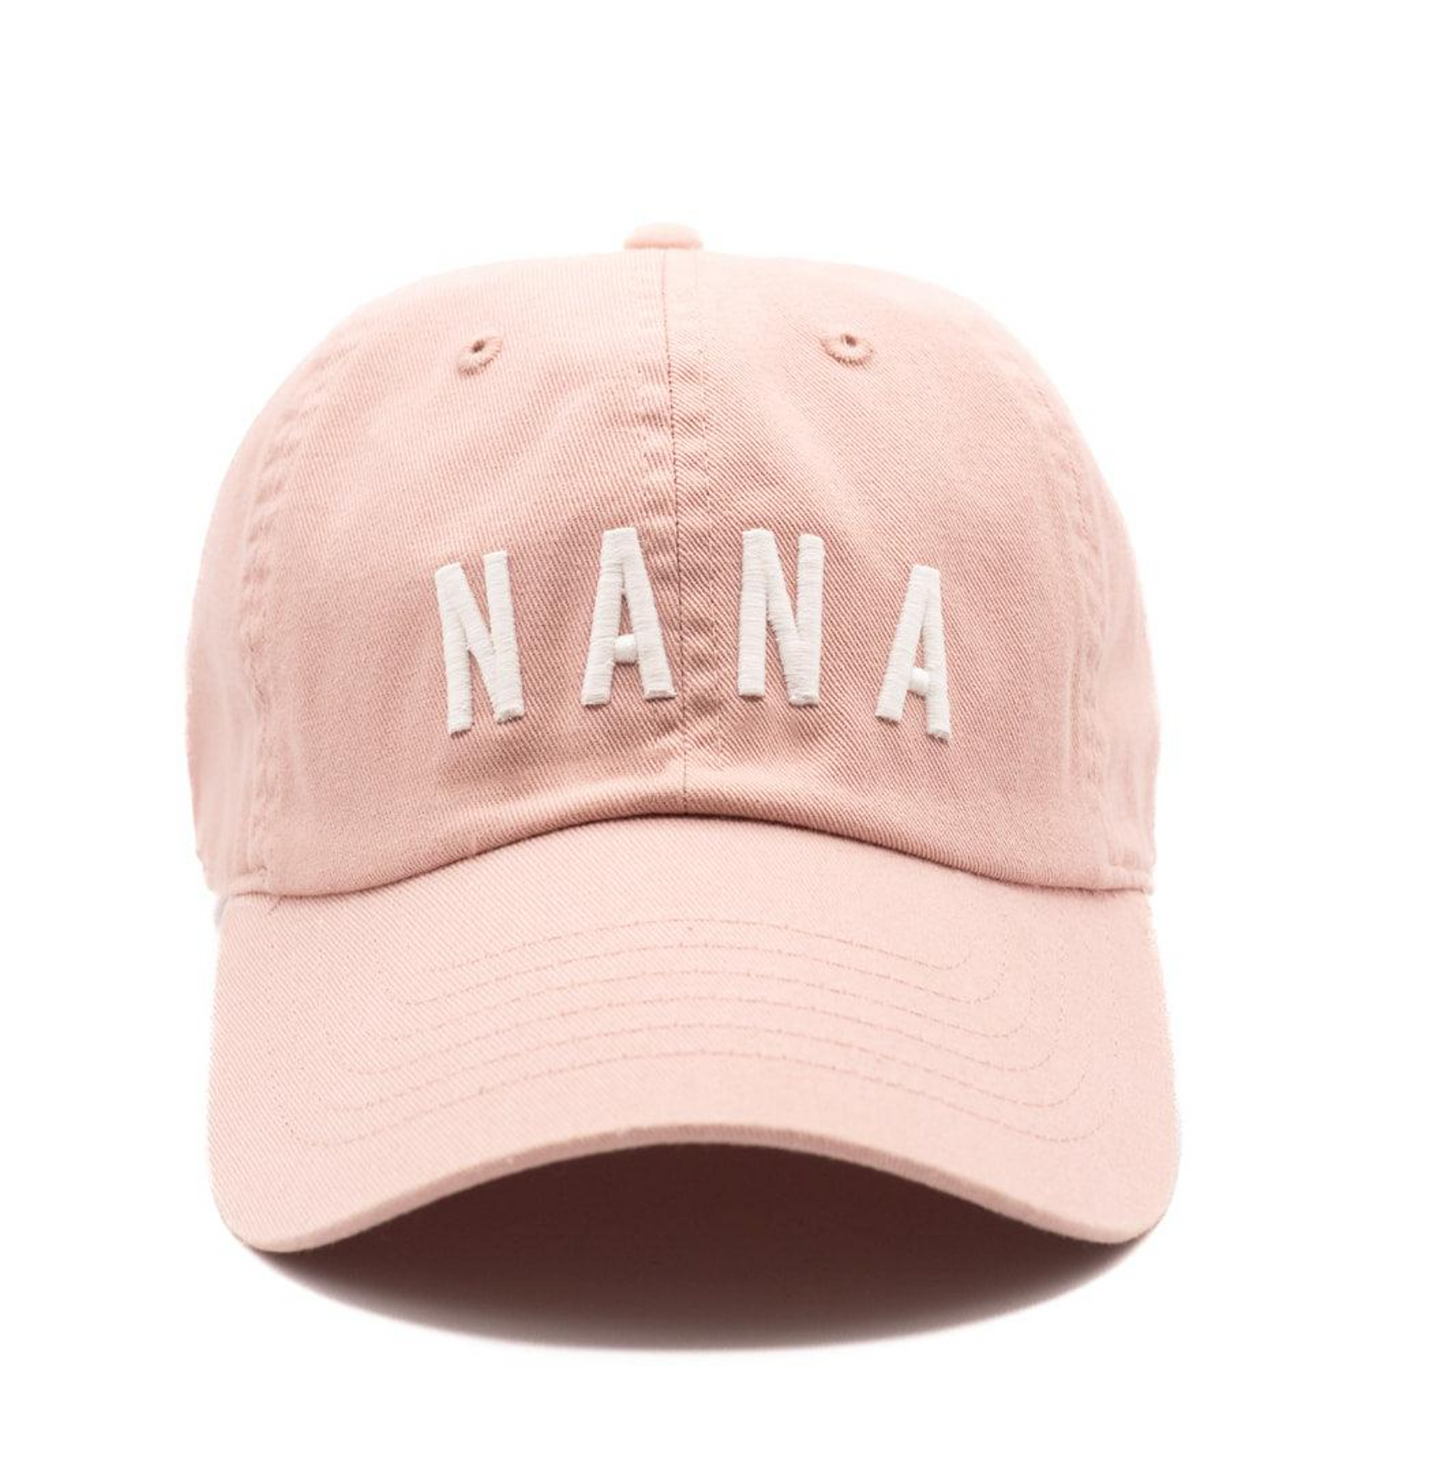 Nana Baseball Cap, Dusty Rose